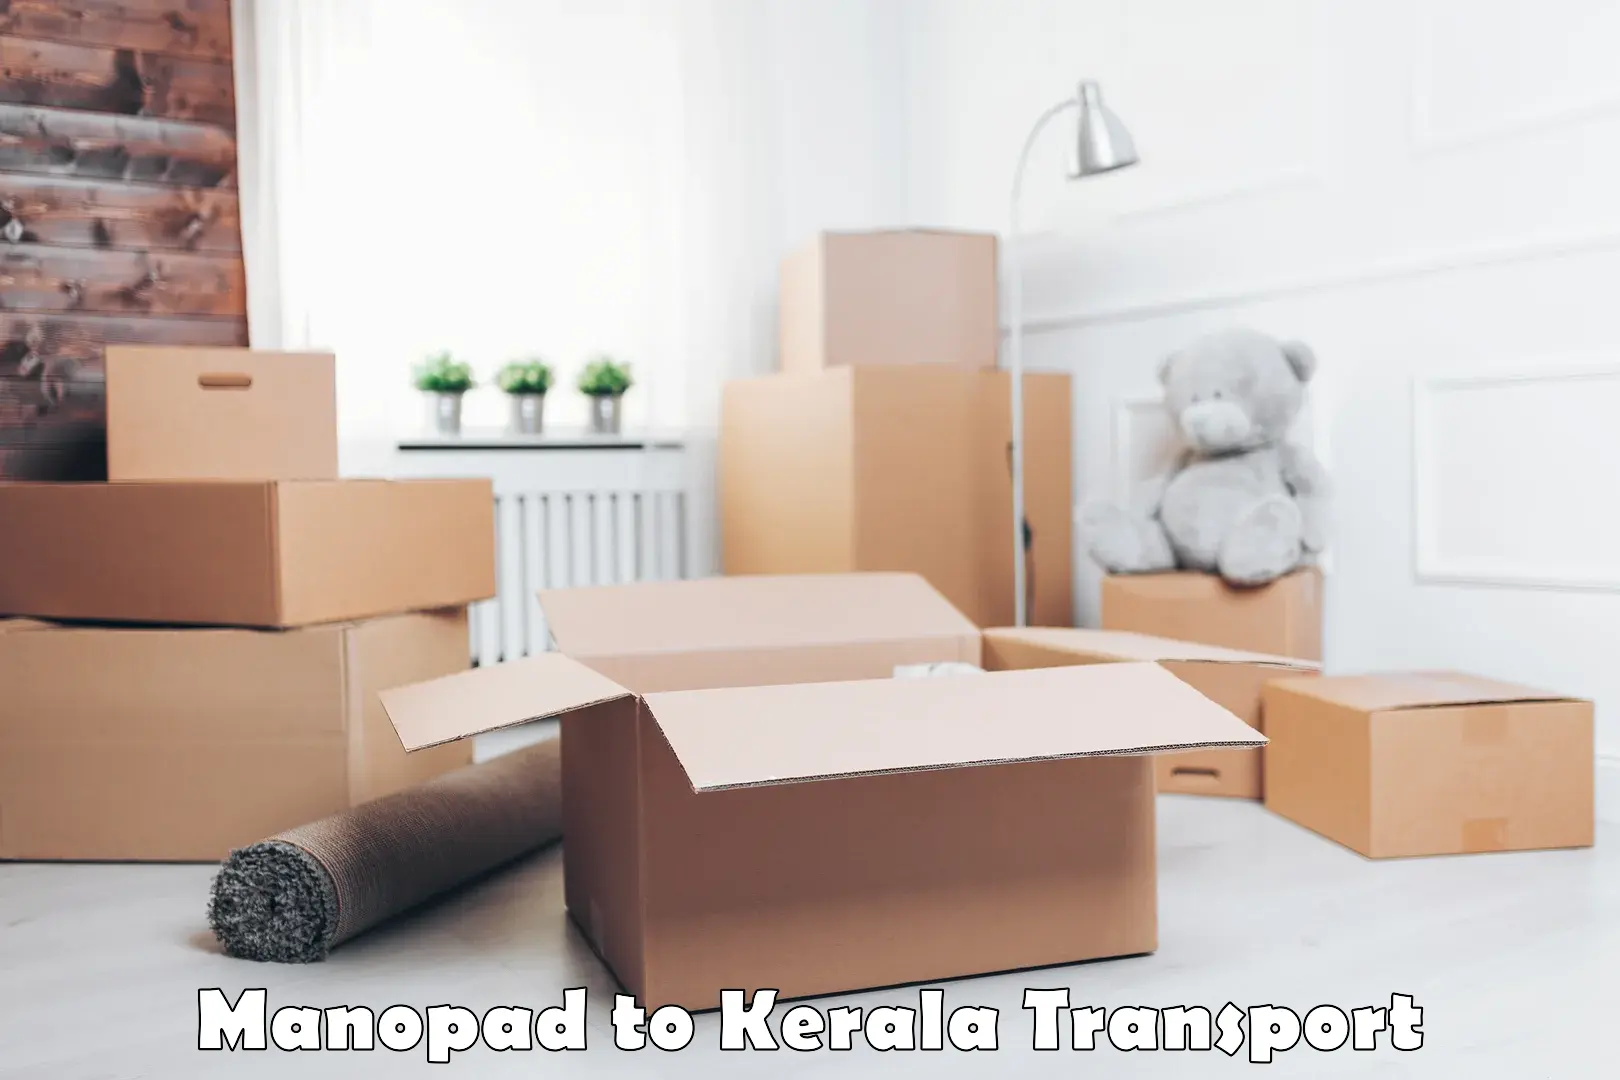 India truck logistics services Manopad to Ramankary